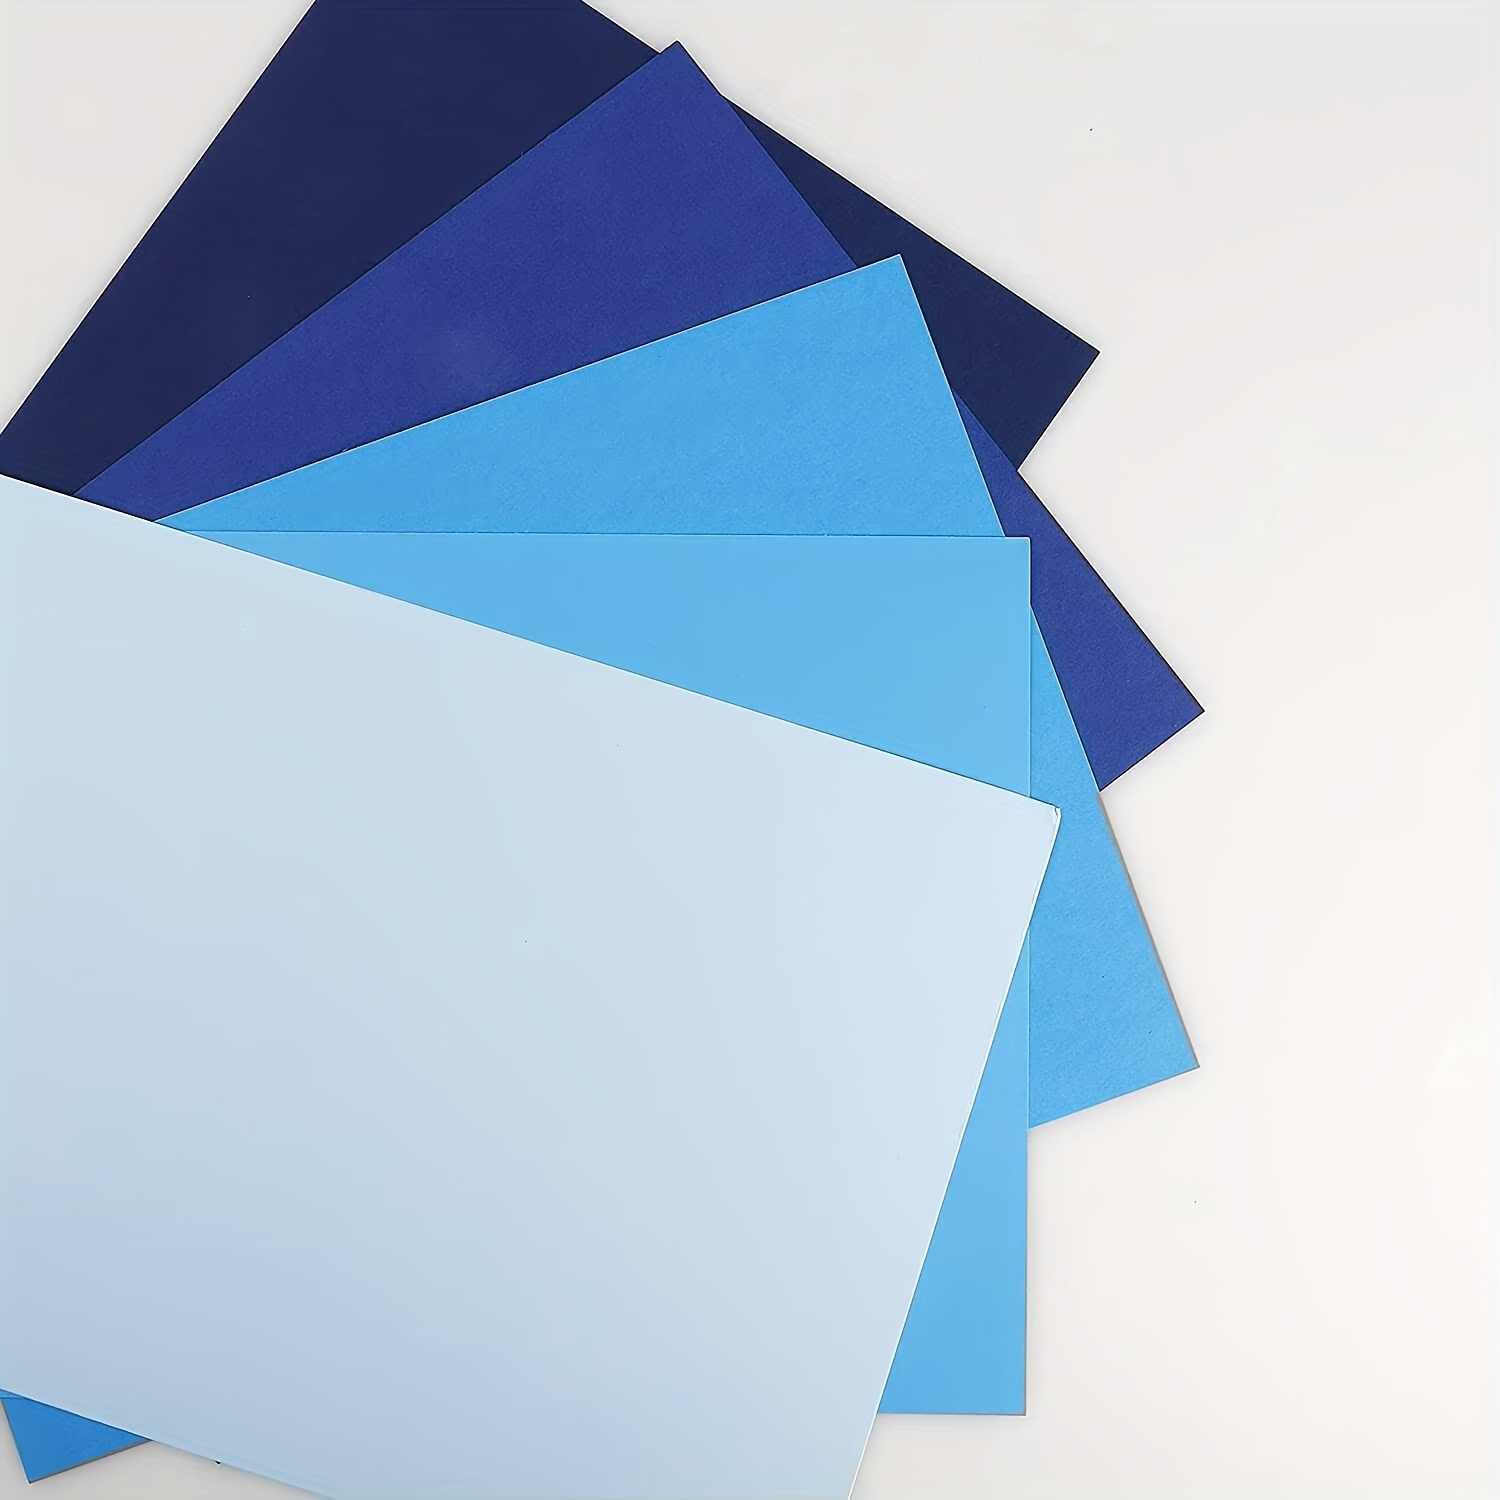 Papier cartonné bleu marine couleur papier épais 20 feuilles, 8.26 X 11.7  A4 couverture papier cartonné pour l'artisanat et la fabrication de cartes